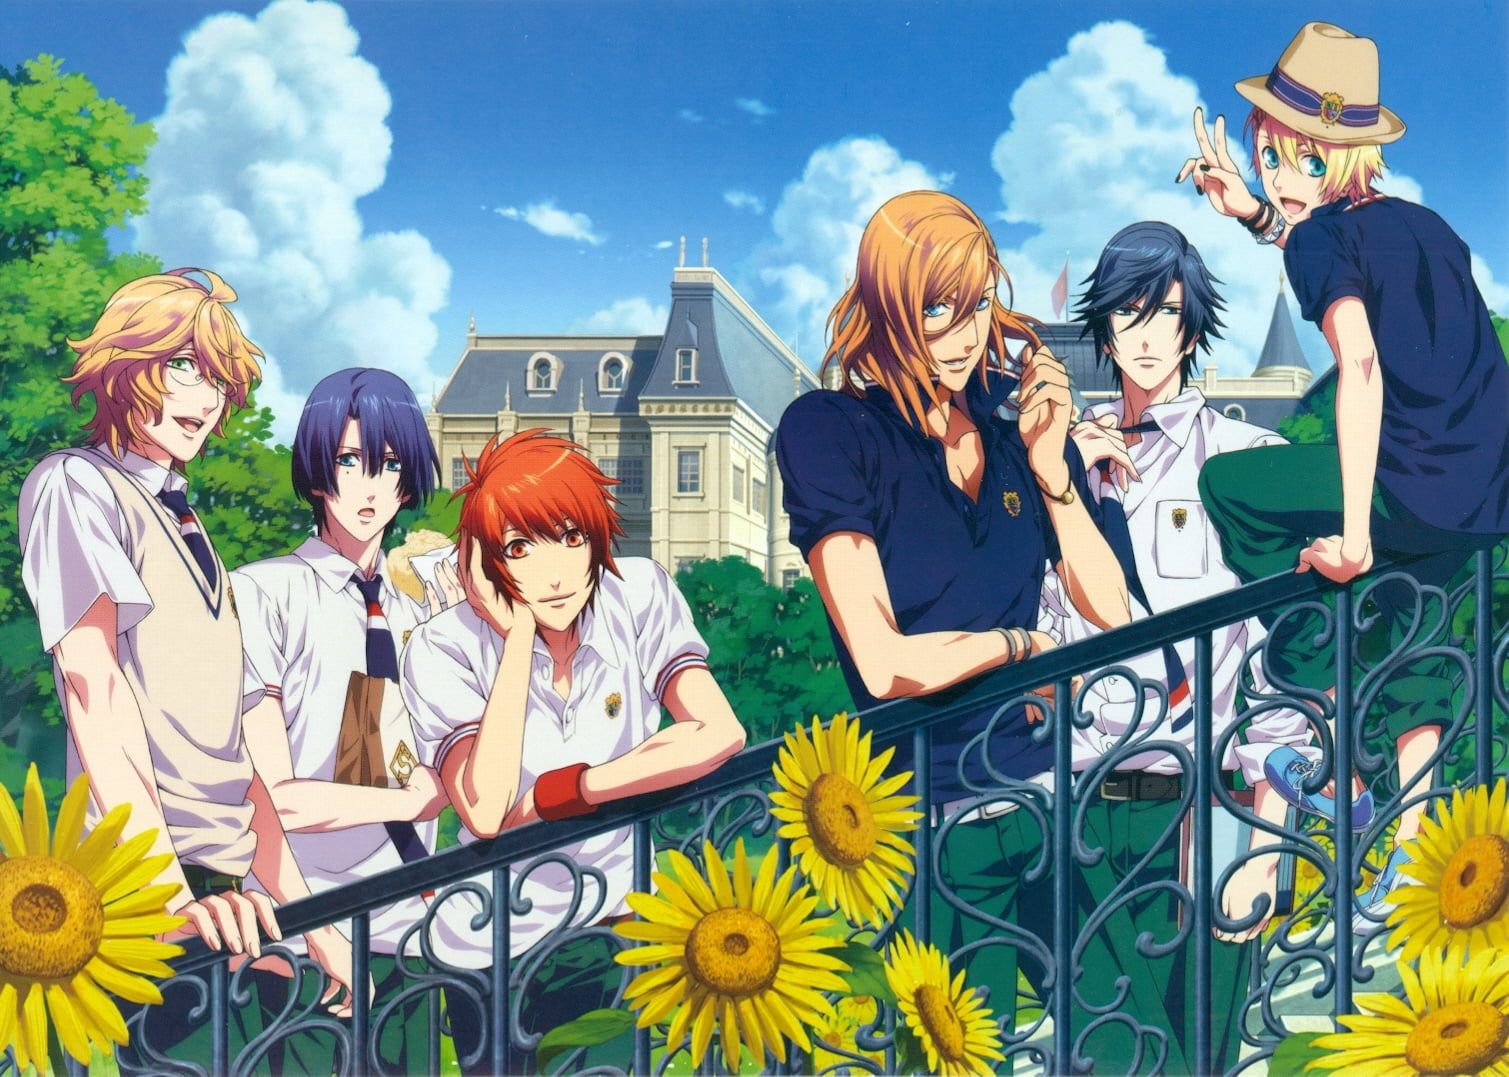 Group of men anime wallpaper, anime, guys, sunflowers, city, walk